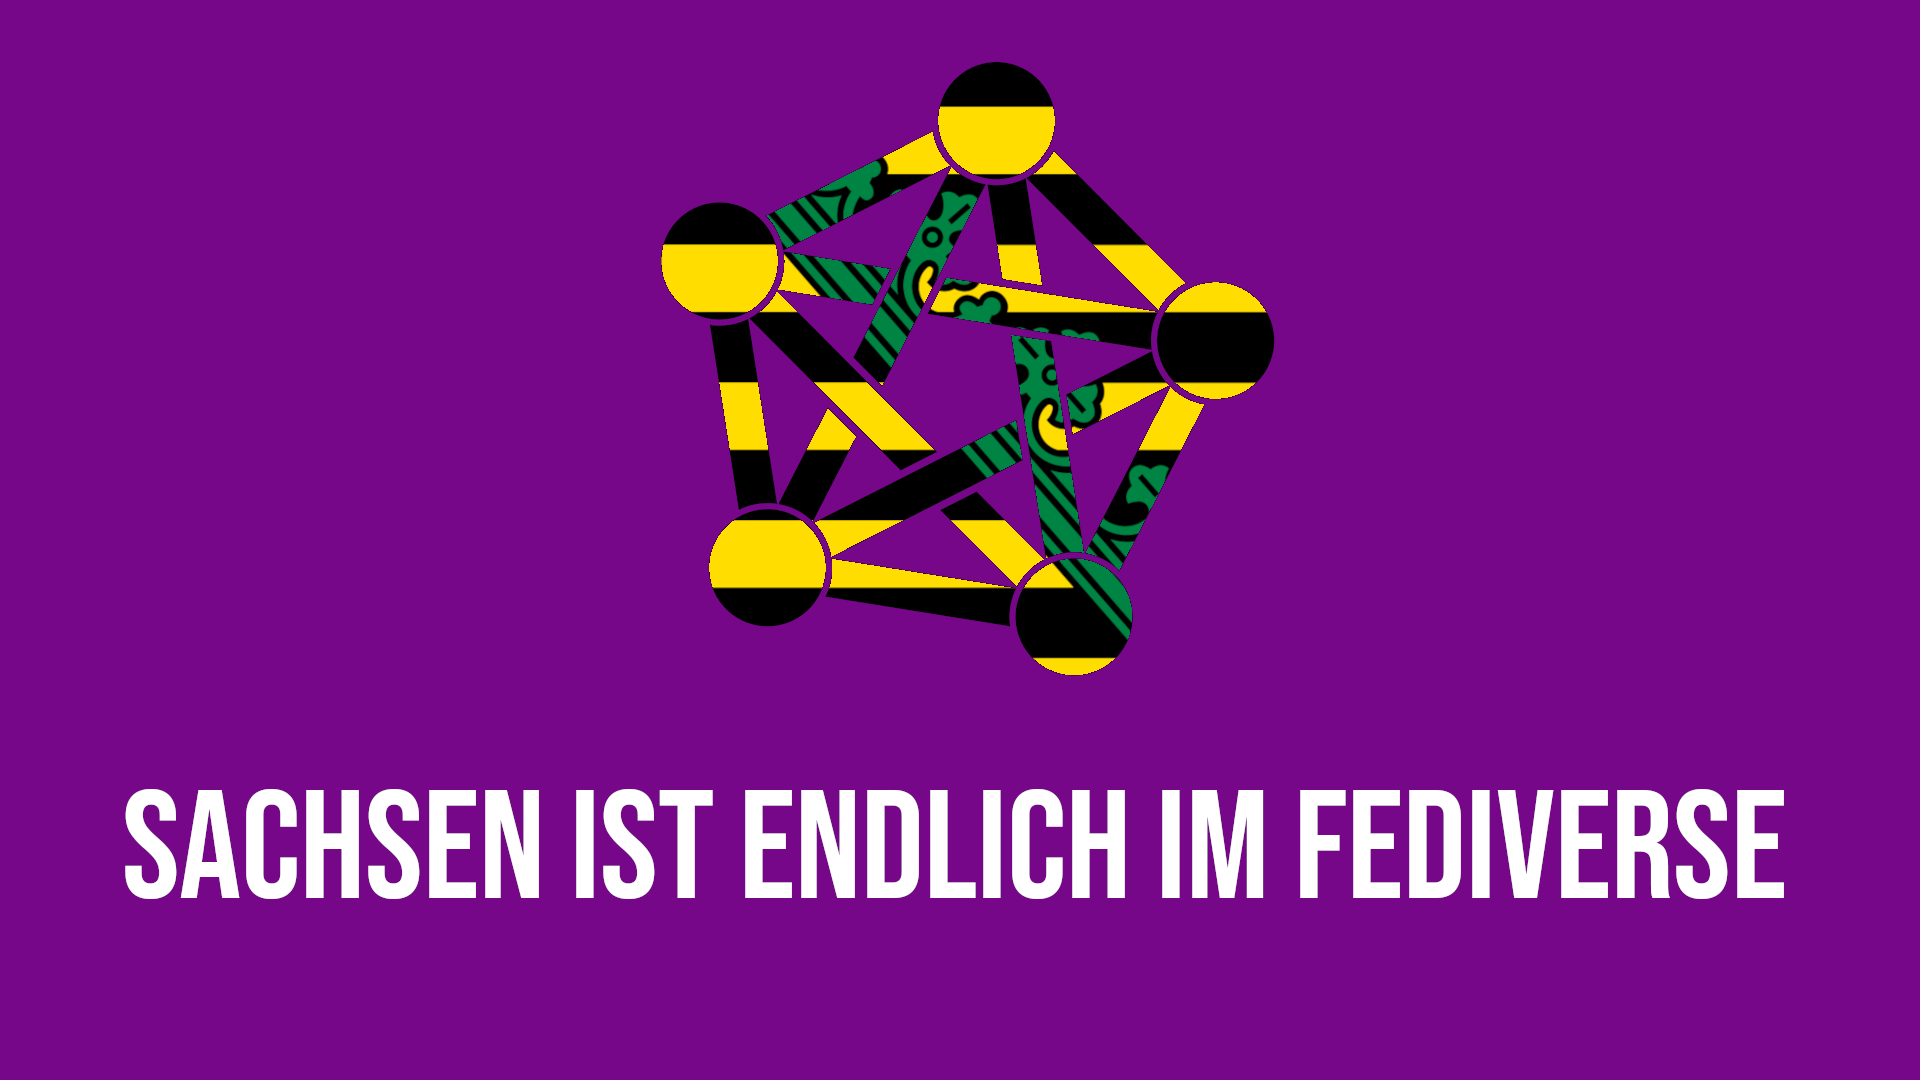 Das Fediverse-Logo im Muster des sächsischen Wappens auf violetten Grund. Darunter steht: "Sachsen ist endlich im Fediverse"